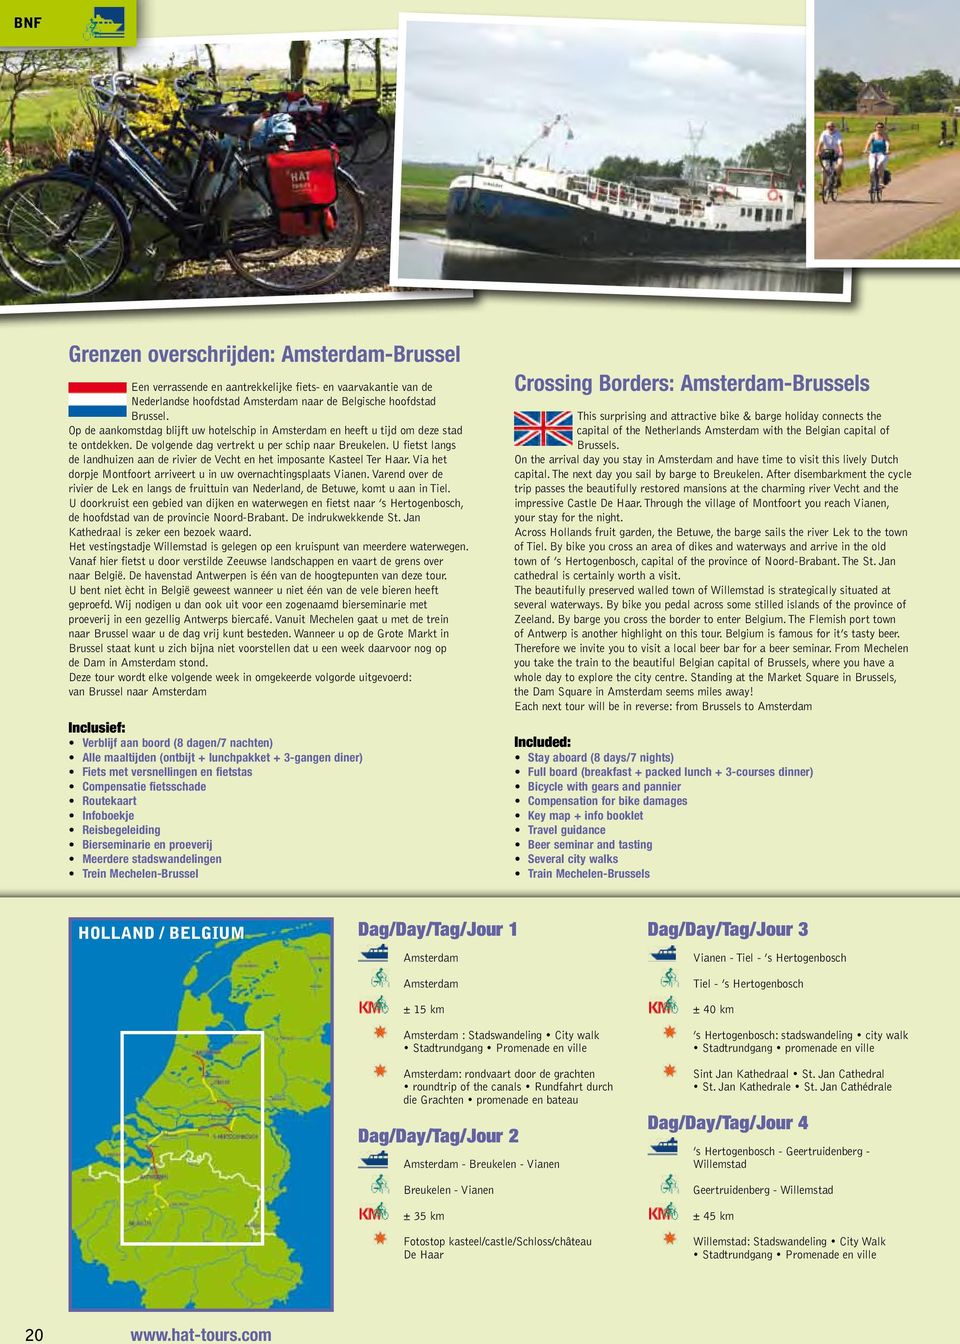 U fietst langs de landhuizen aan de rivier de Vecht en het imposante Kasteel Ter Haar. Via het dorpje Montfoort arriveert u in uw overnachtingsplaats Vianen.